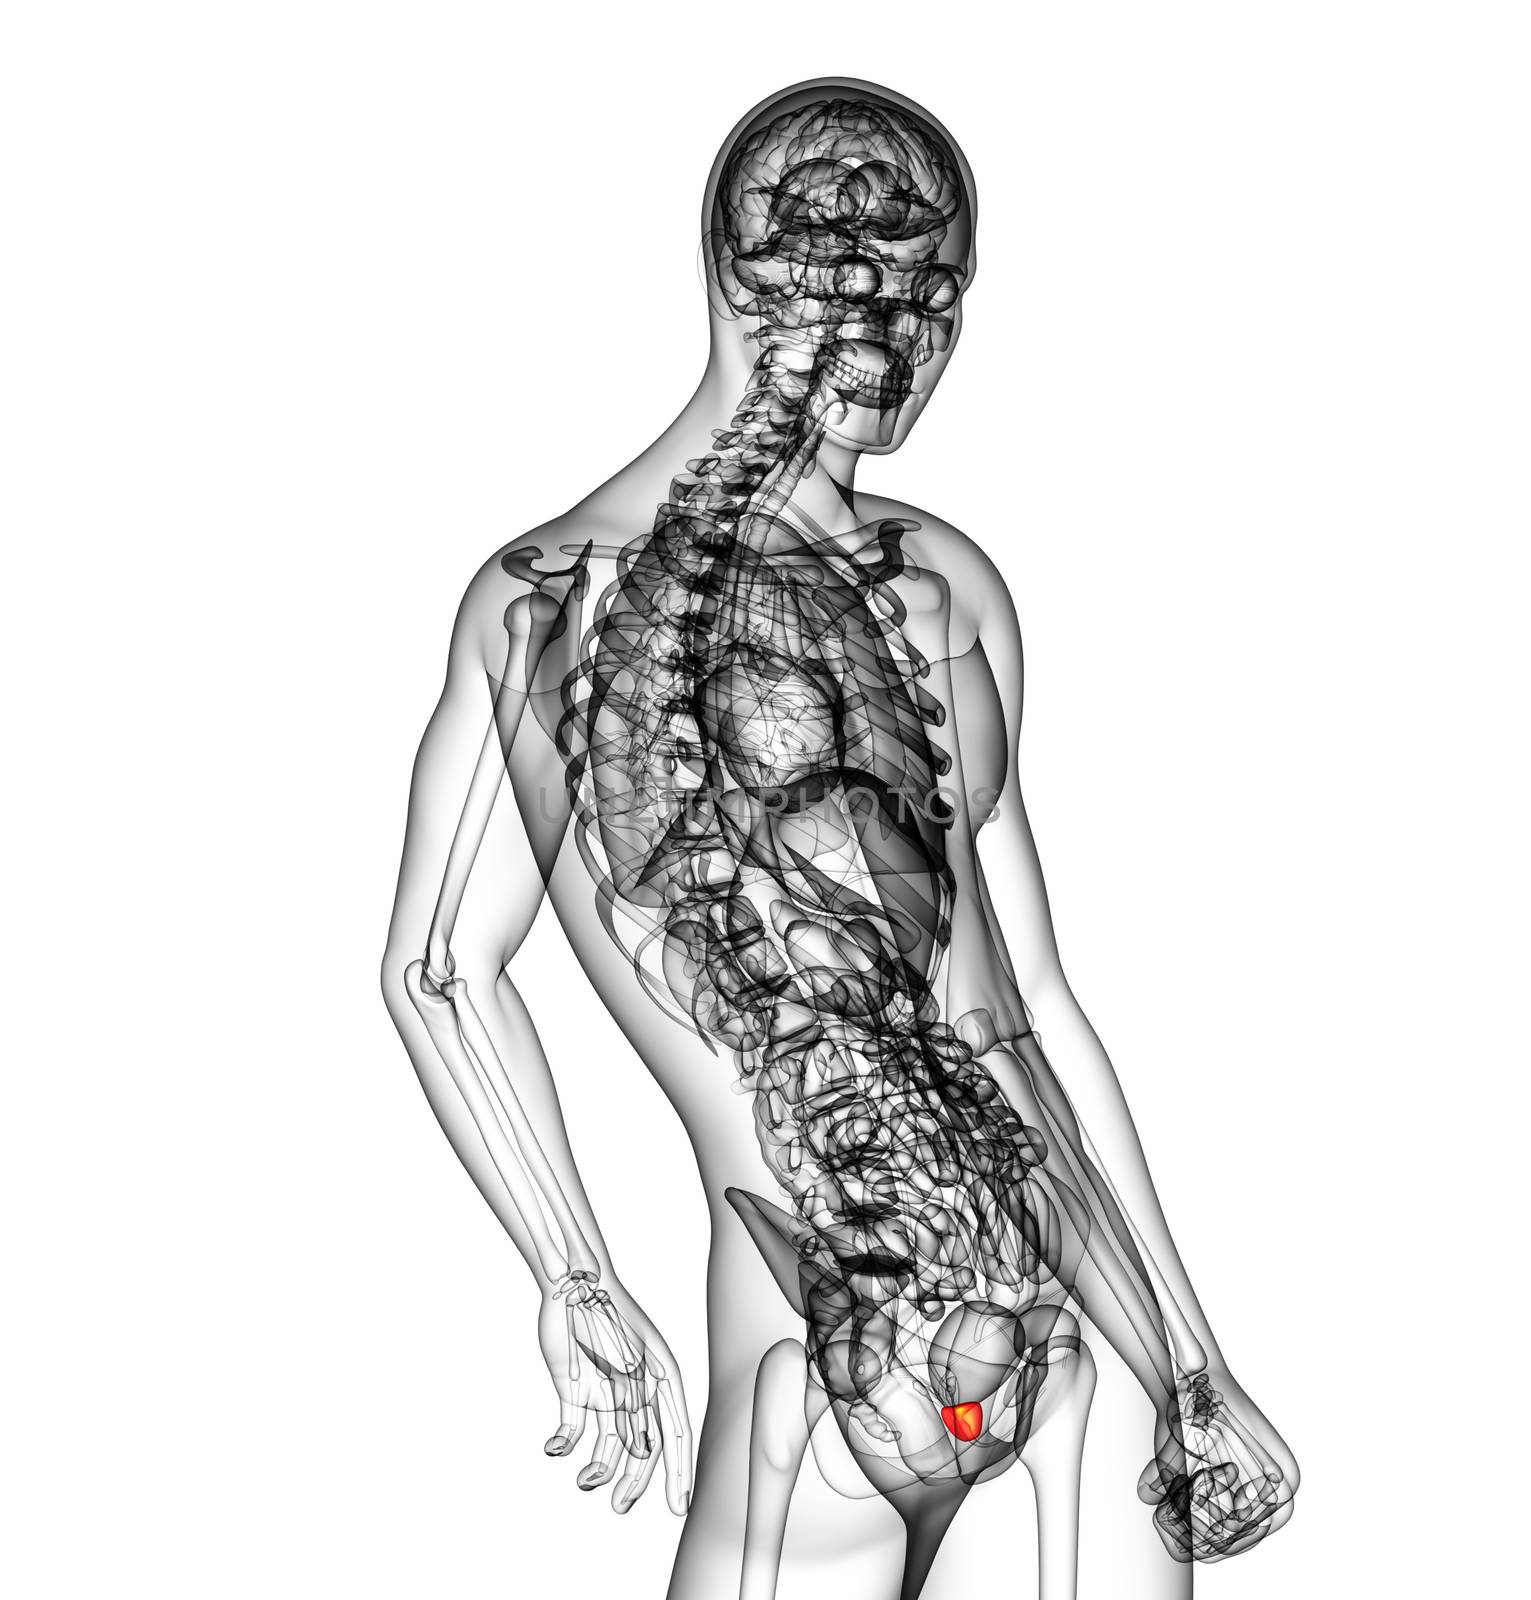 3d render medical illustration of the prostate gland - side view